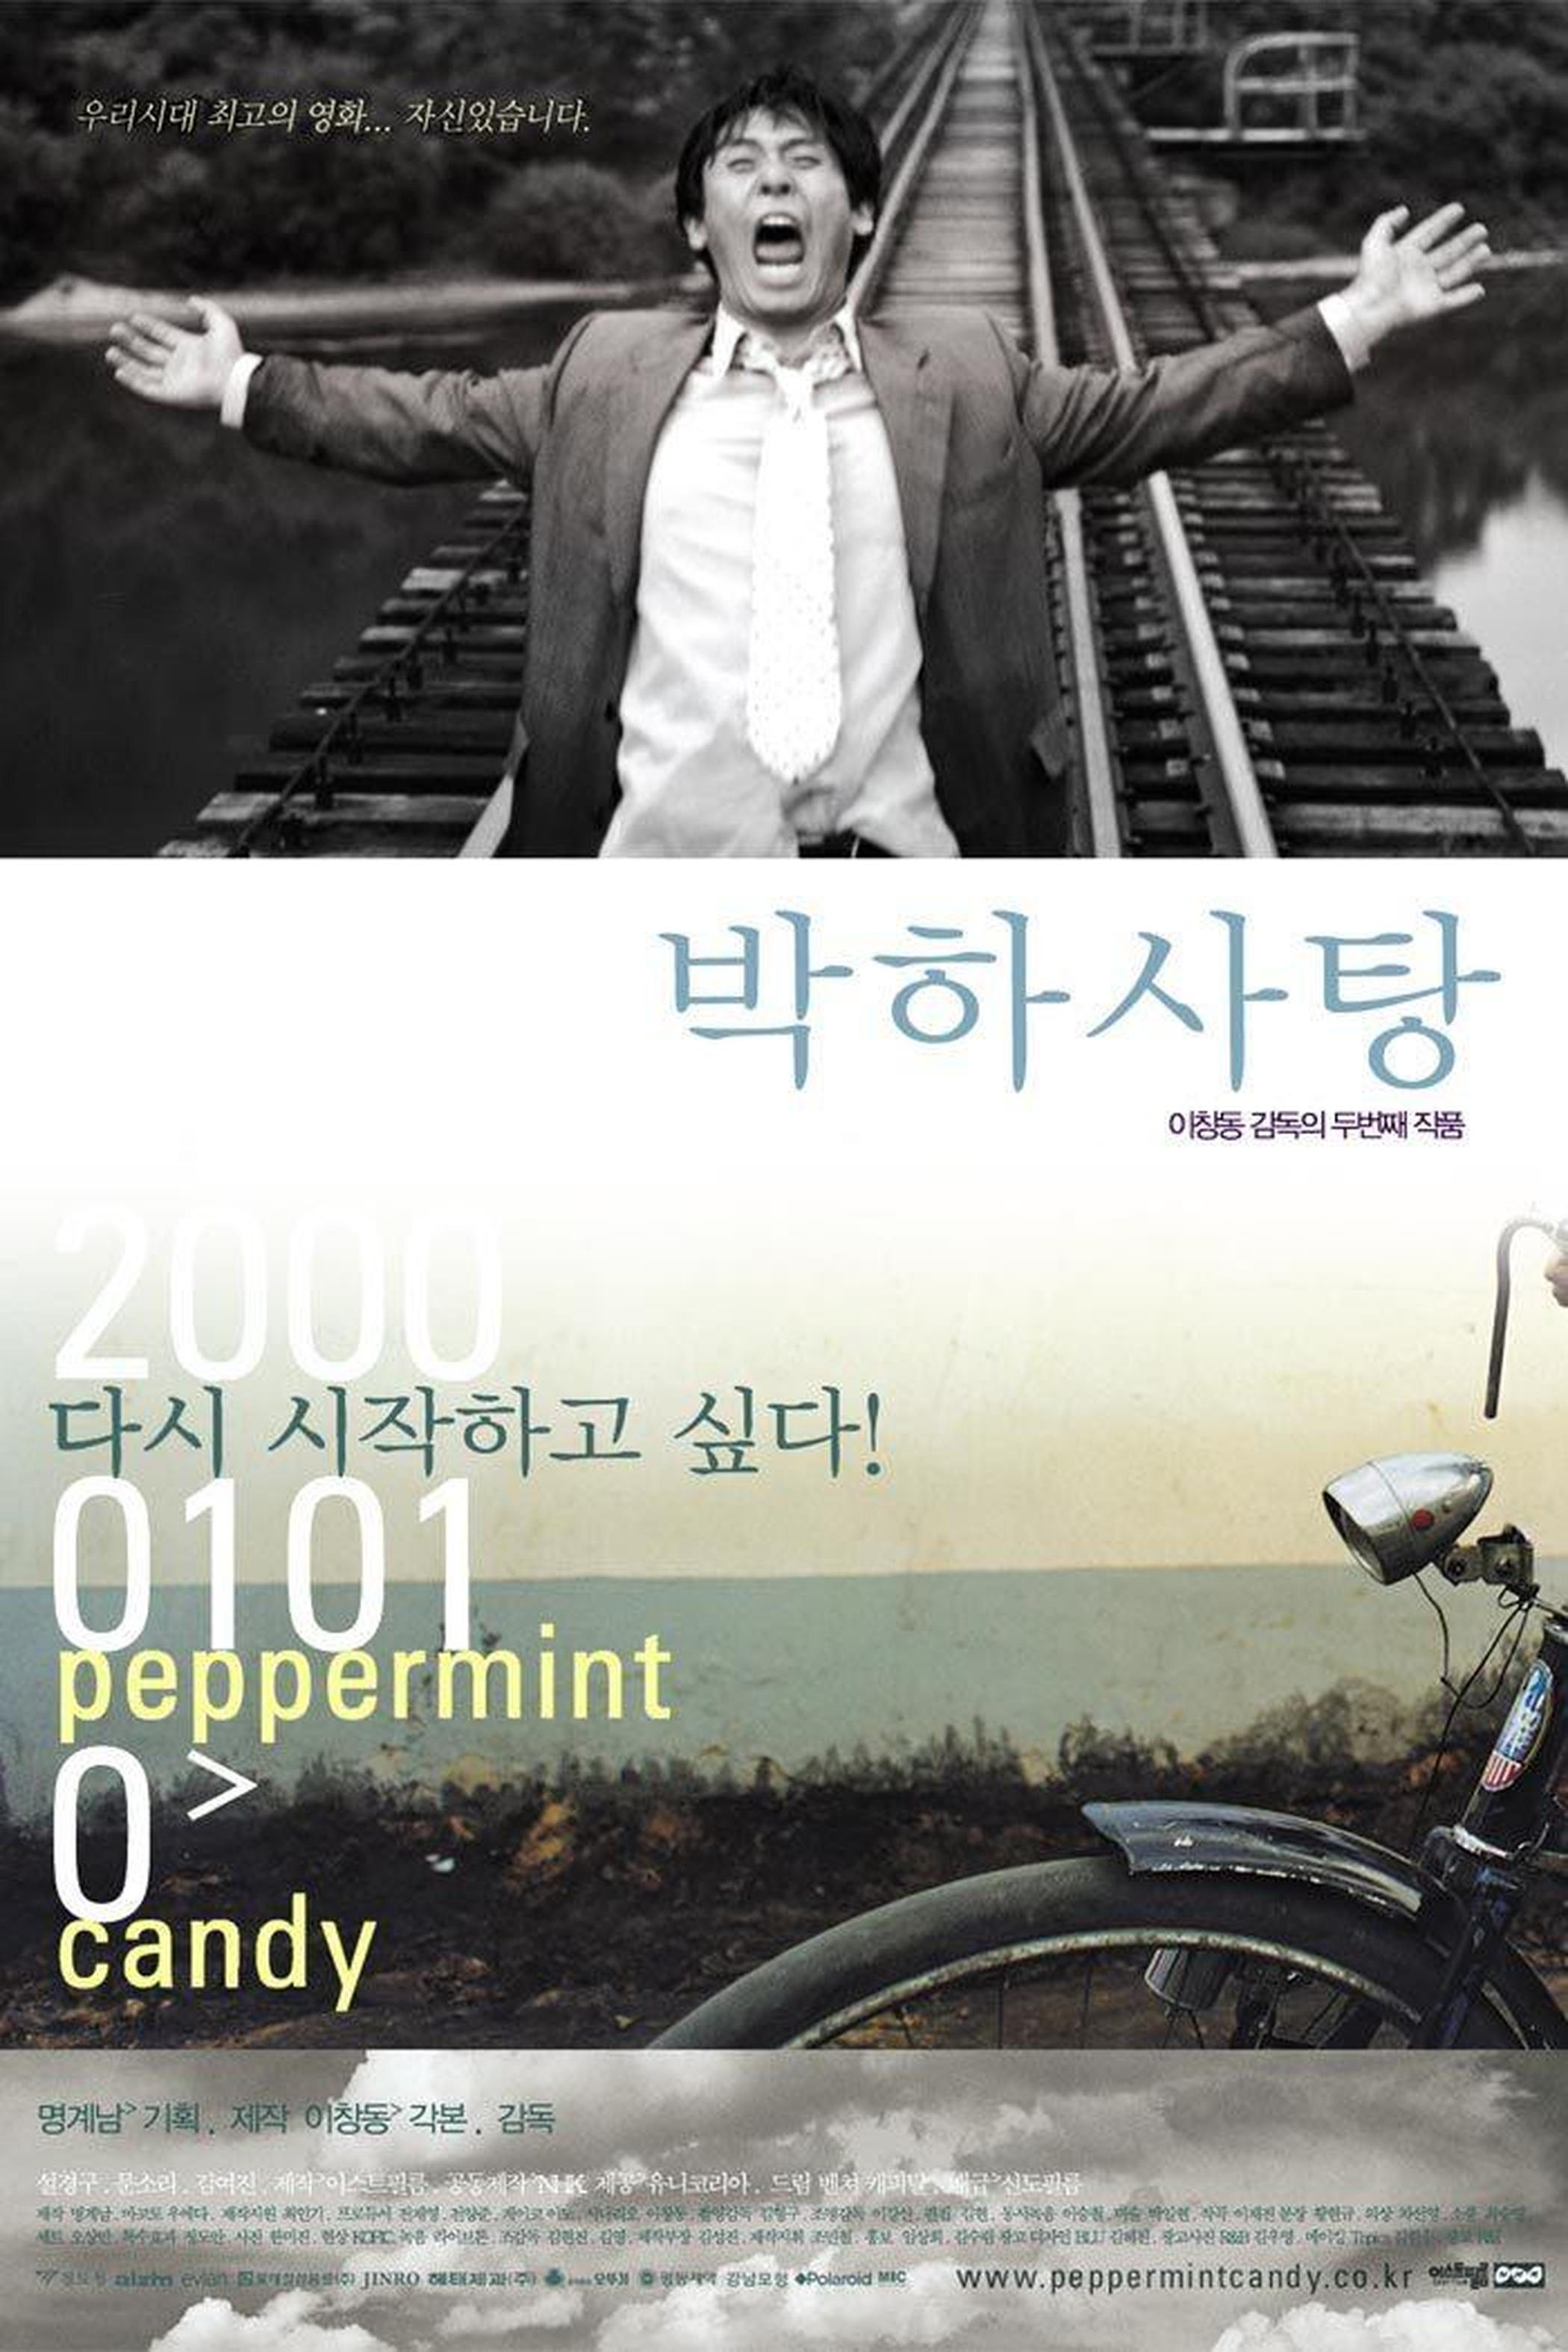 【2000-2010】《薄荷糖》 (1999)导演李沧东。《薄荷糖》通过一个男人生命中的20年向我们展示了韩国社会的巨大变化，以及这种变化对人所带来的冲击。